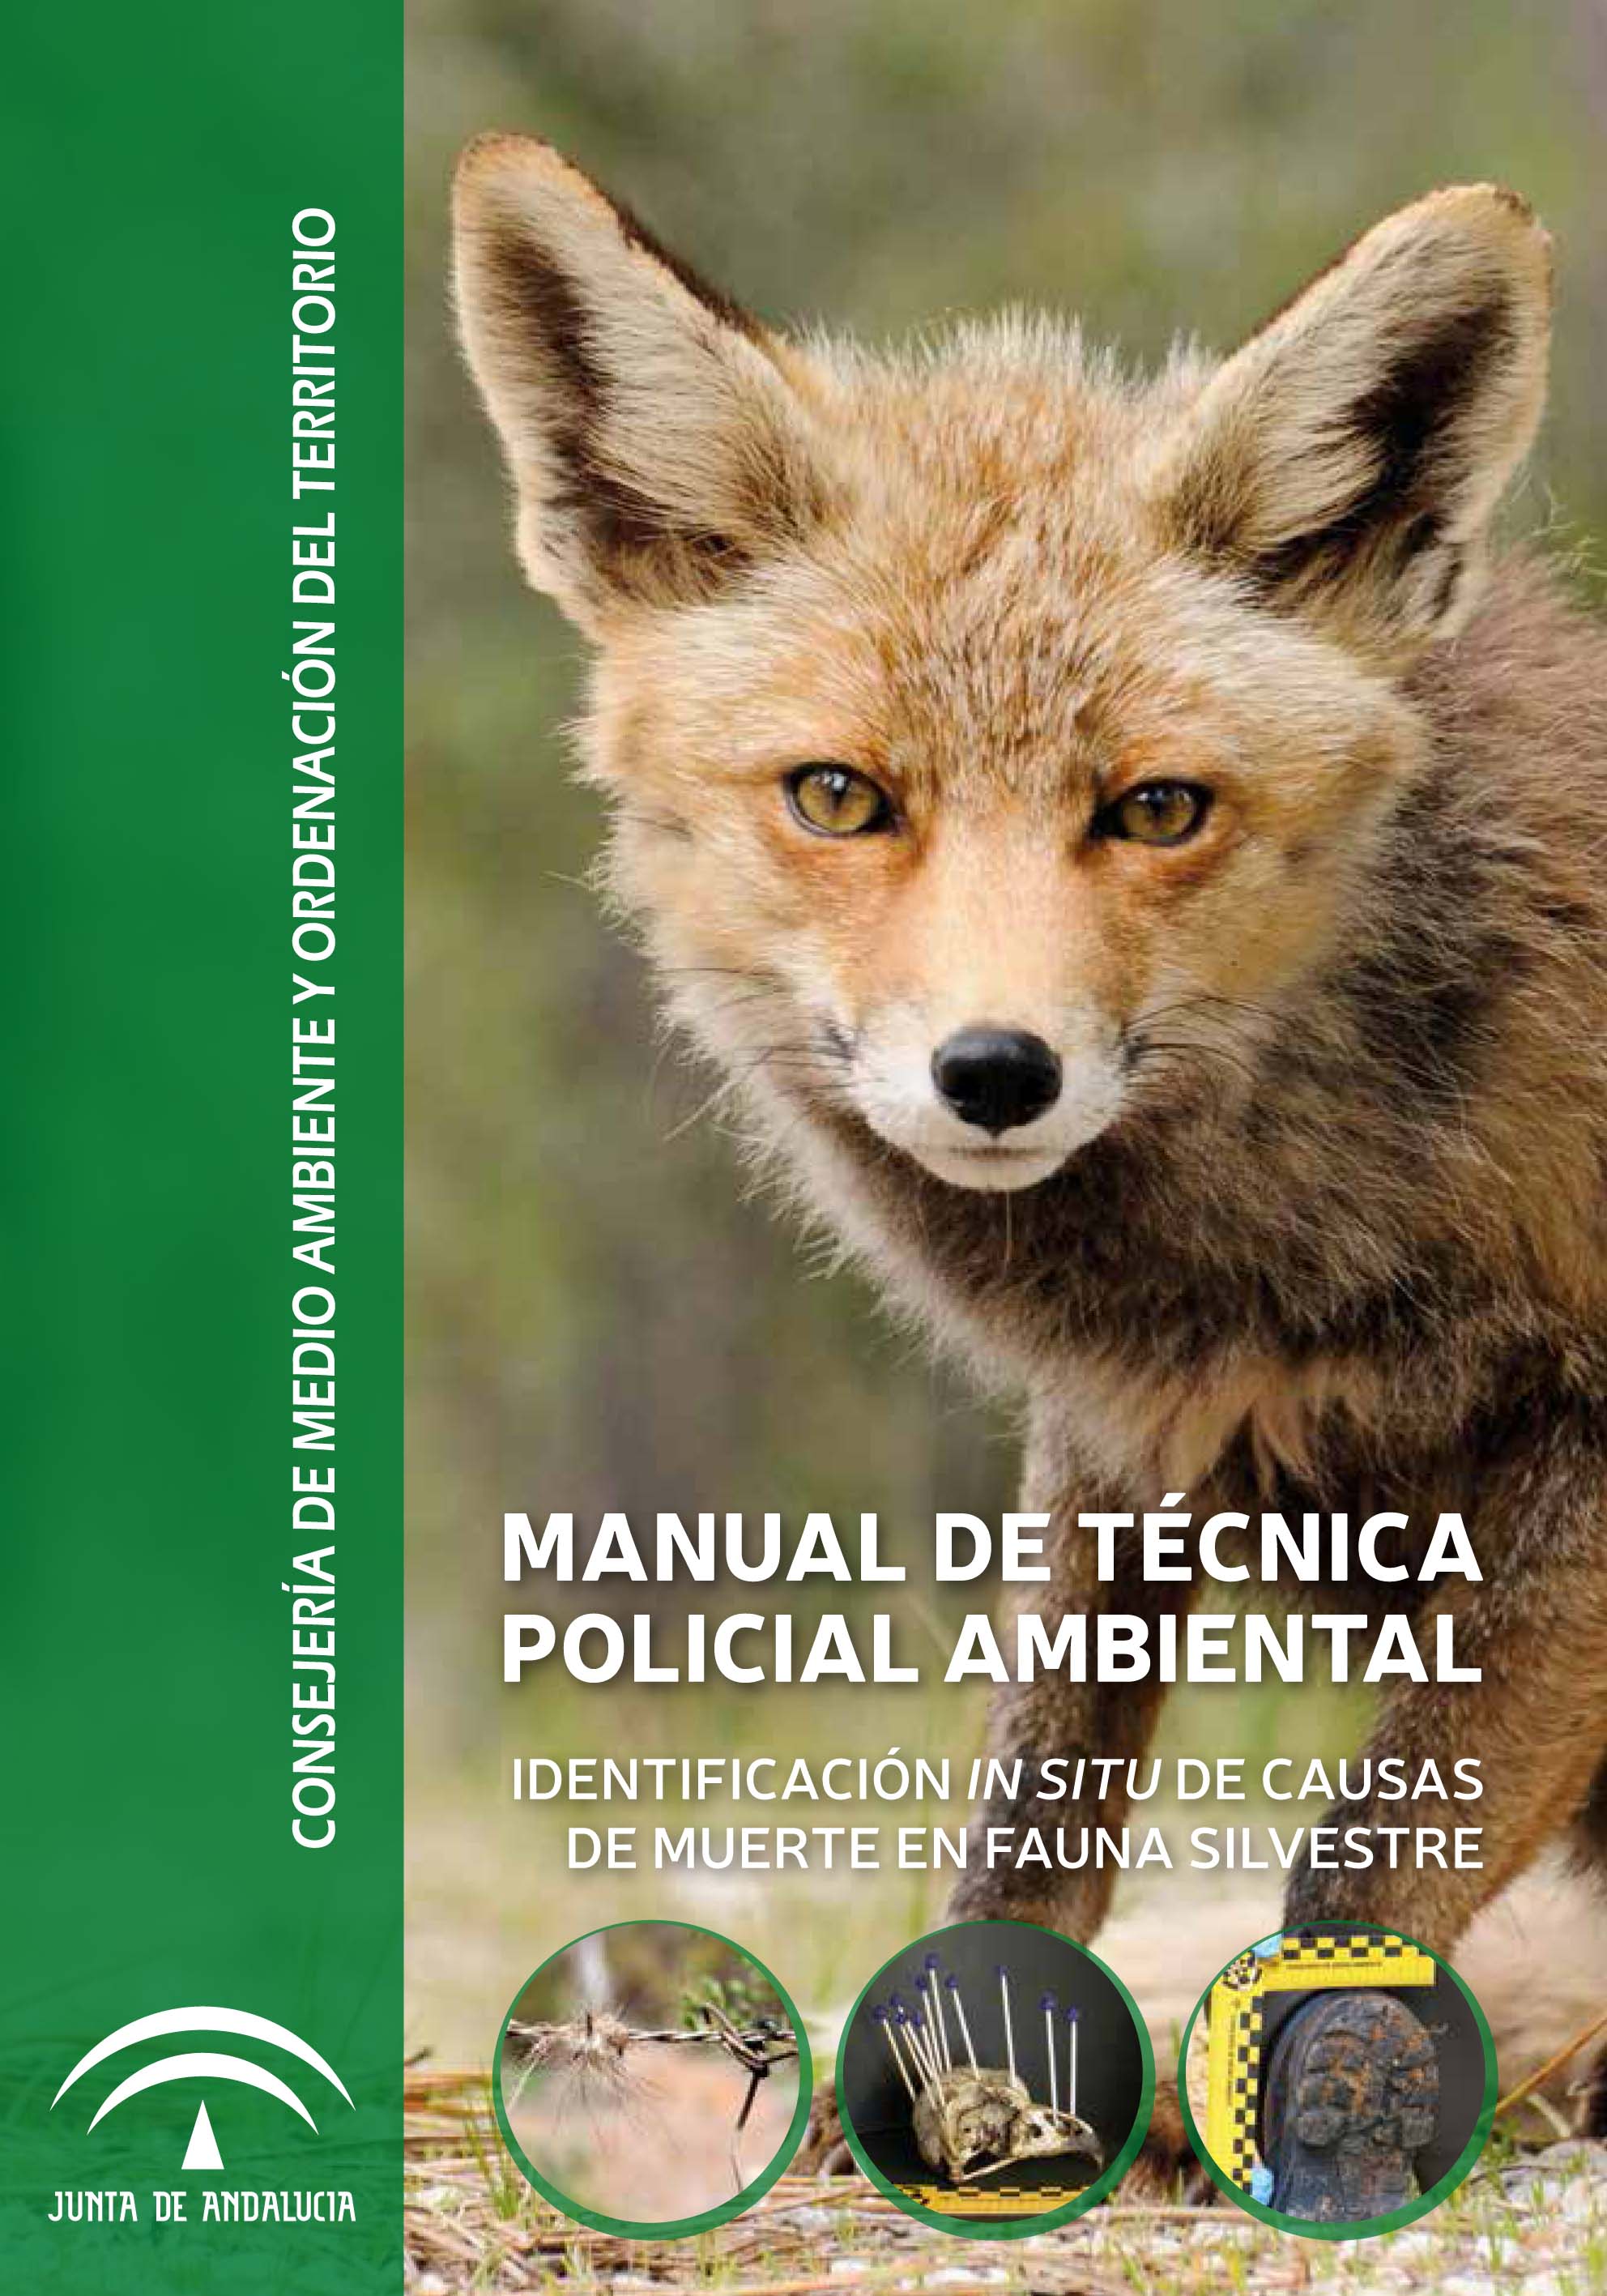 'Manual de Técnica Policial Ambiental. Identificación in situ de causas de muerte en fauna silvestre', de la Junta de Andalucía